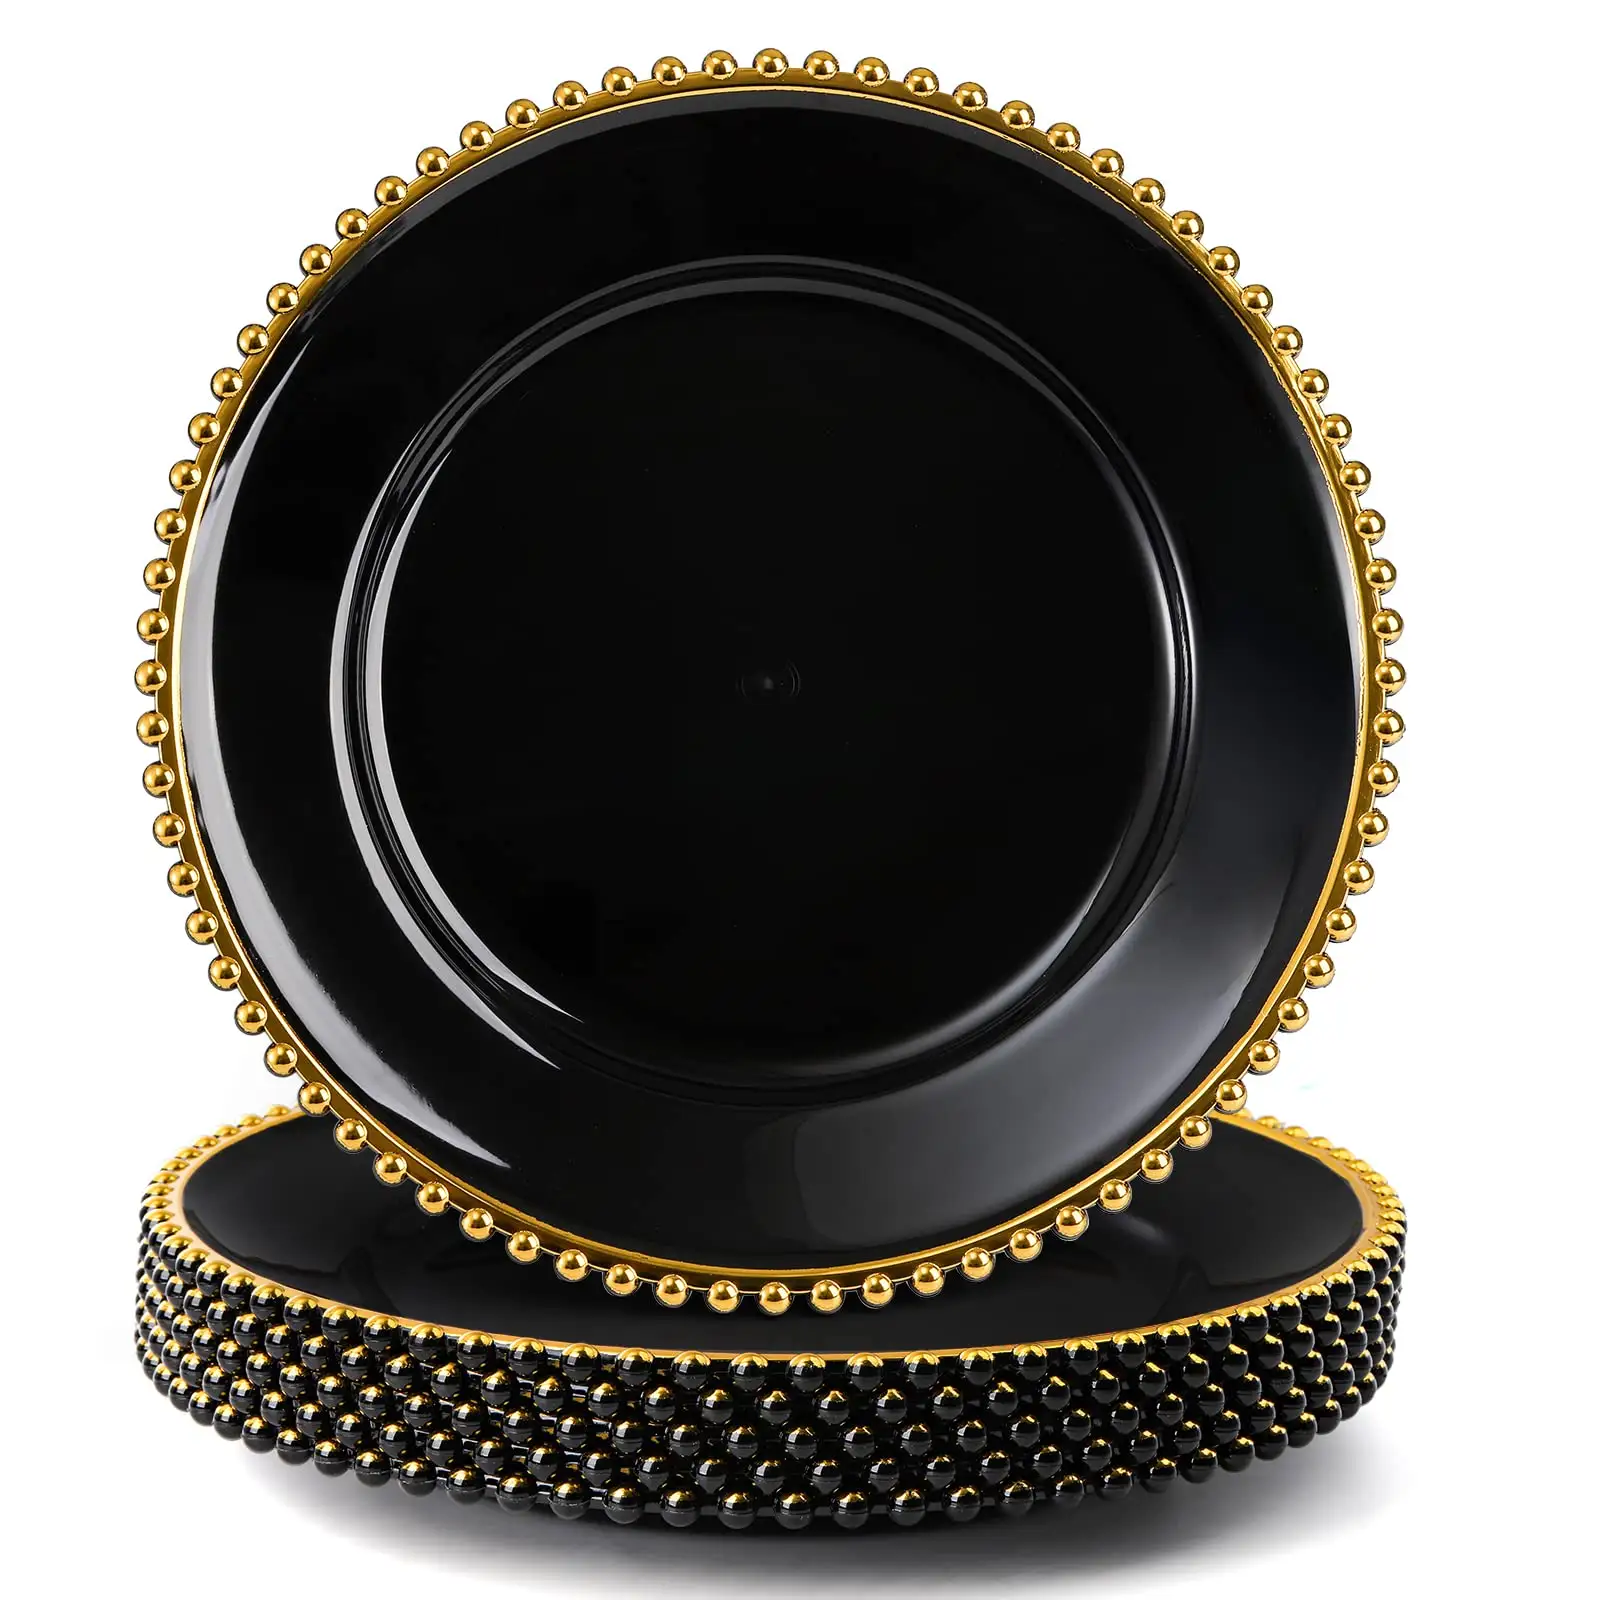 Assiette de présentation noire perlée dorée de 13 pouces, assiette décorative en plastique doré, pour mariage, événement